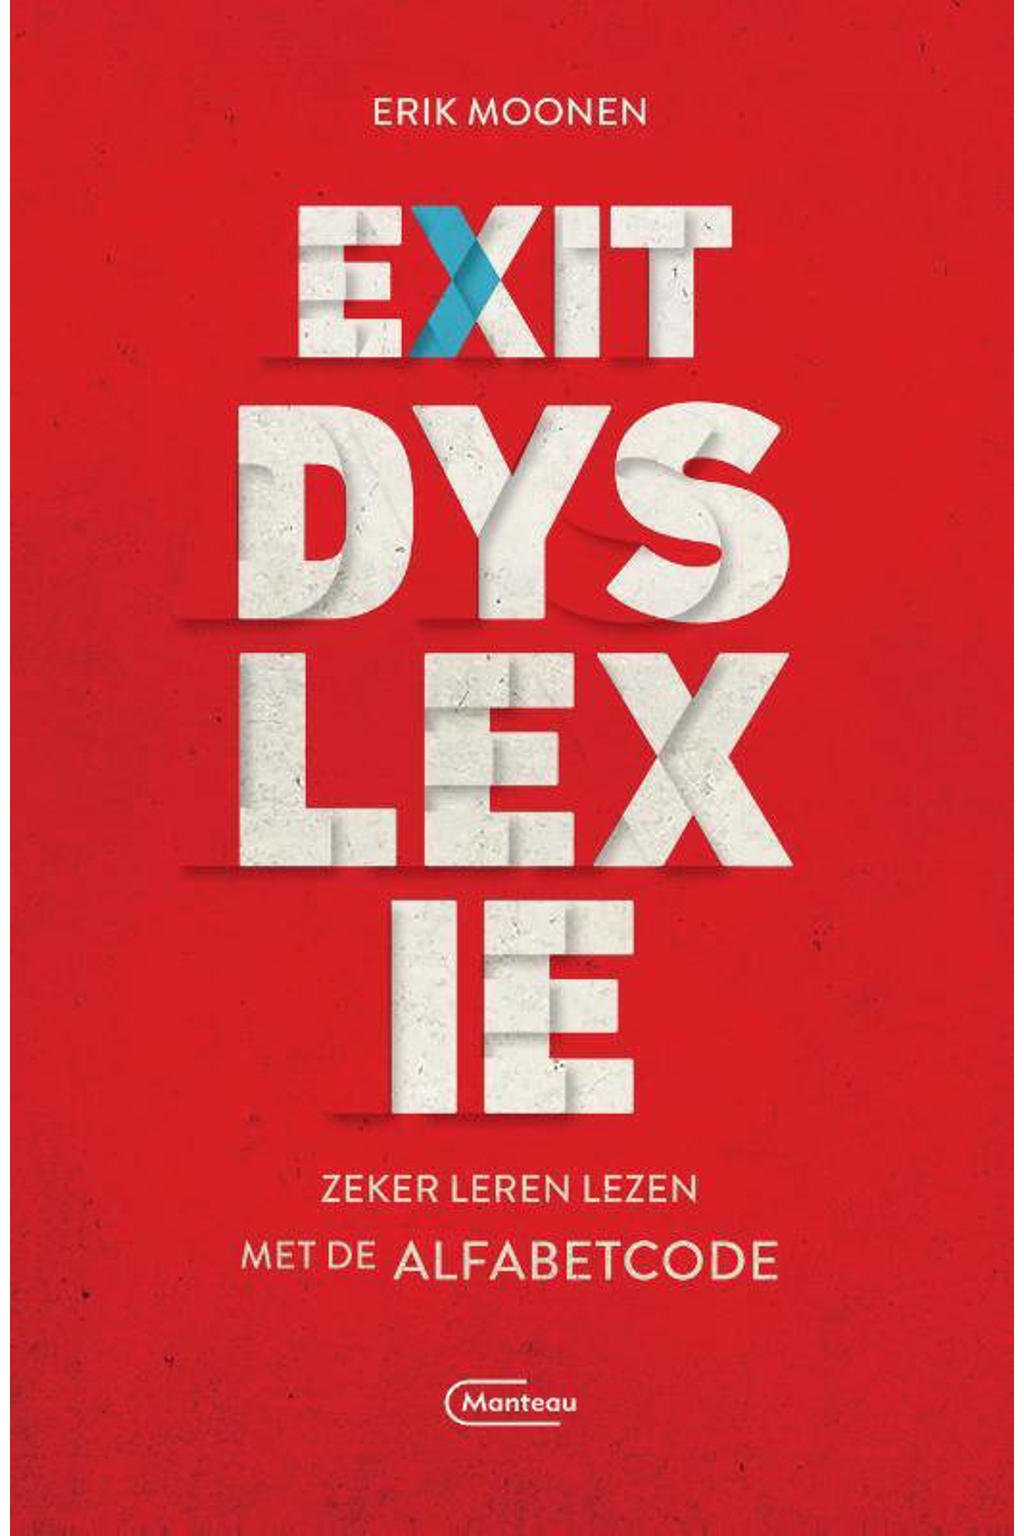 Exit dyslexie - Erik Moonen